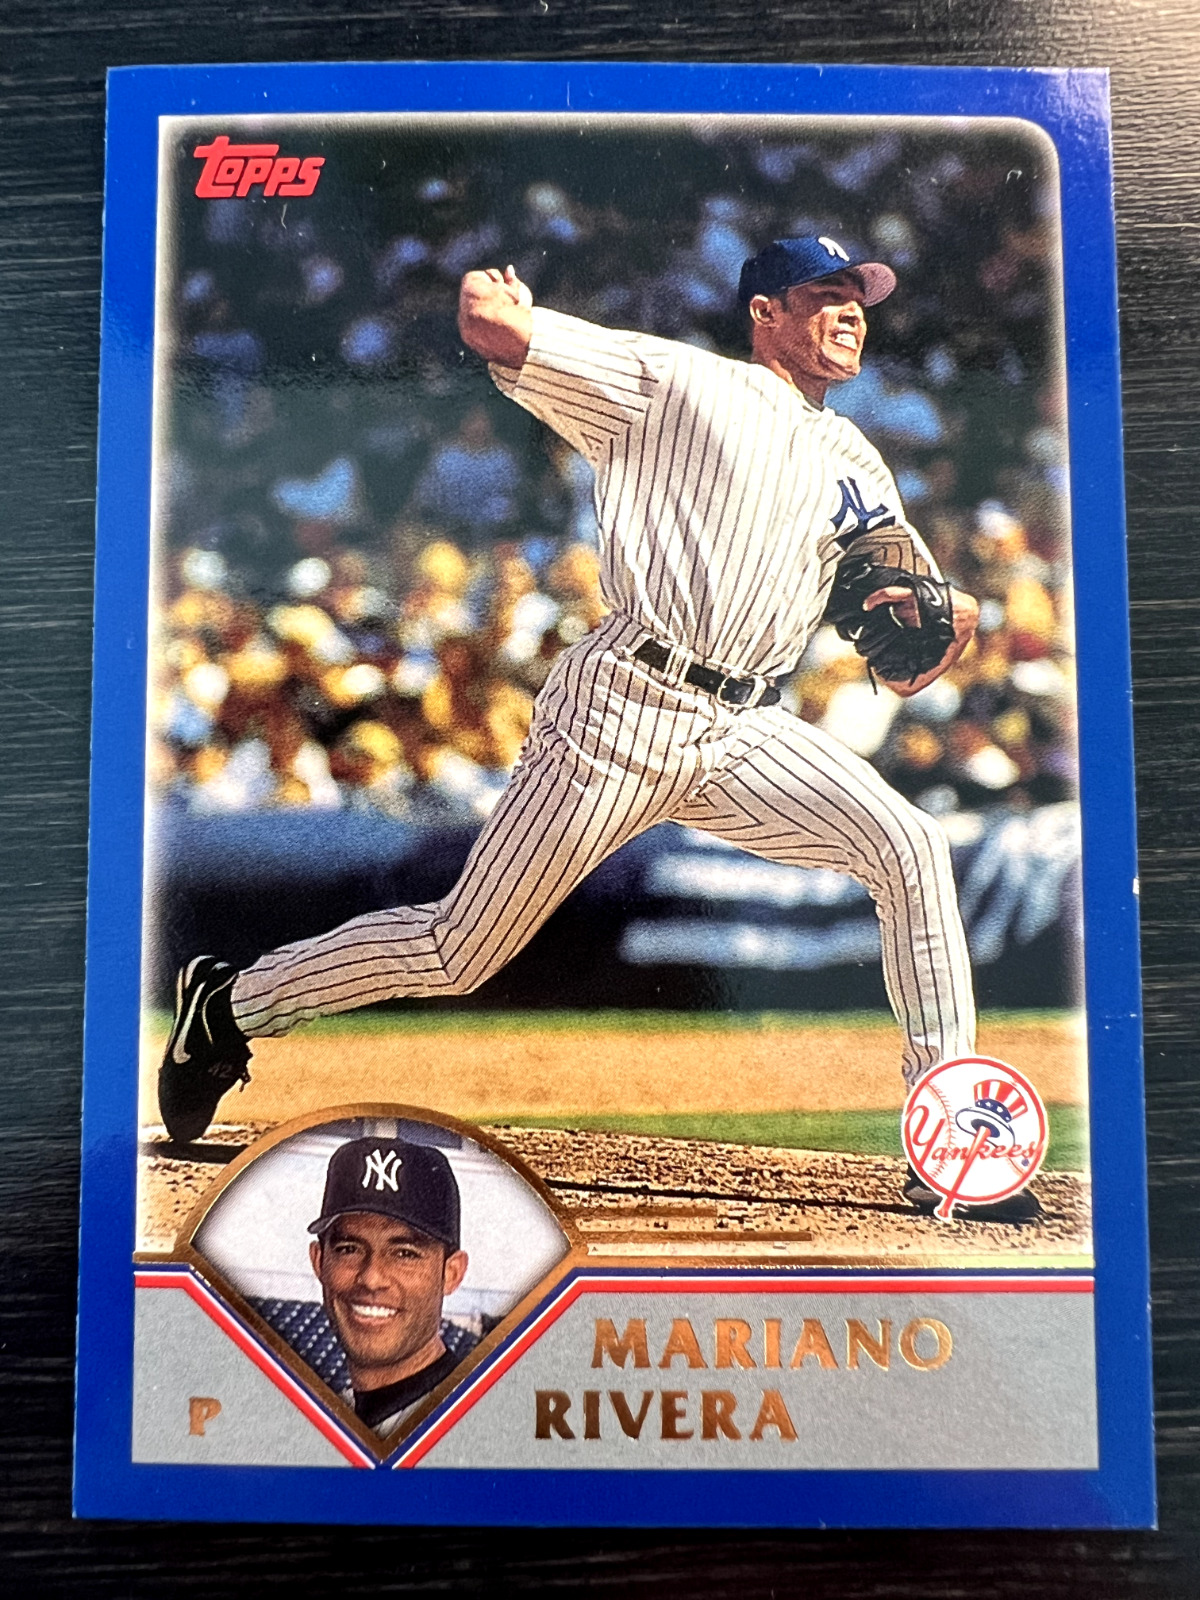 2003 Topps Mariano Rivera #548 New York Yankees